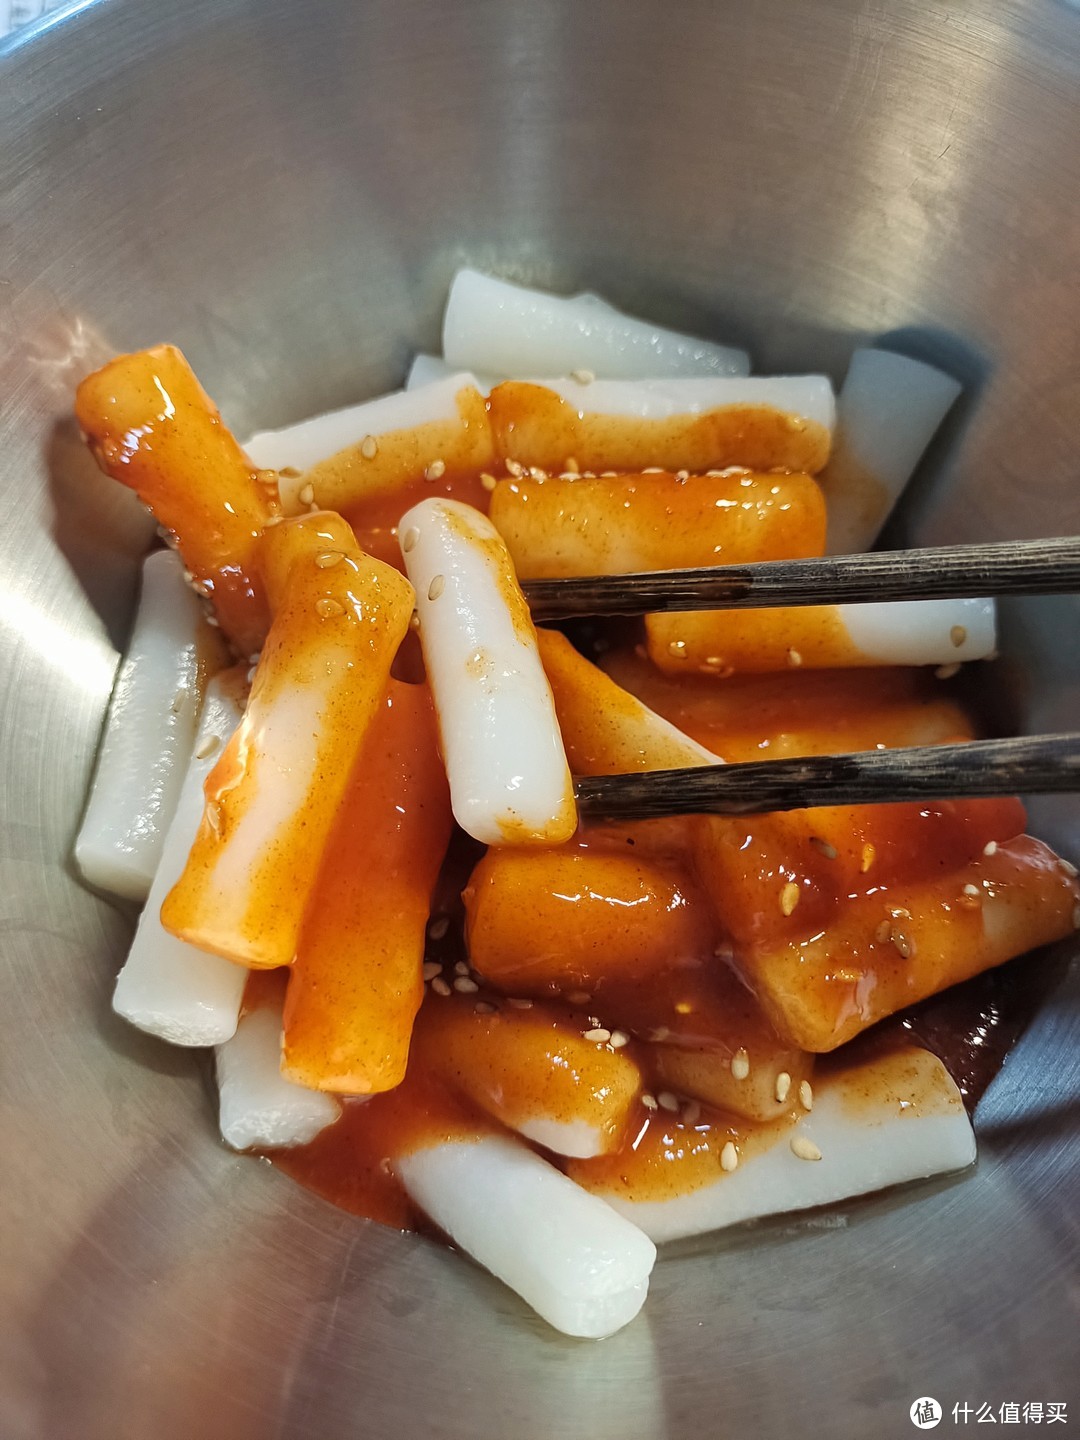 在家就能吃到的美味韩式炒年糕，而且价格十分公道哟。